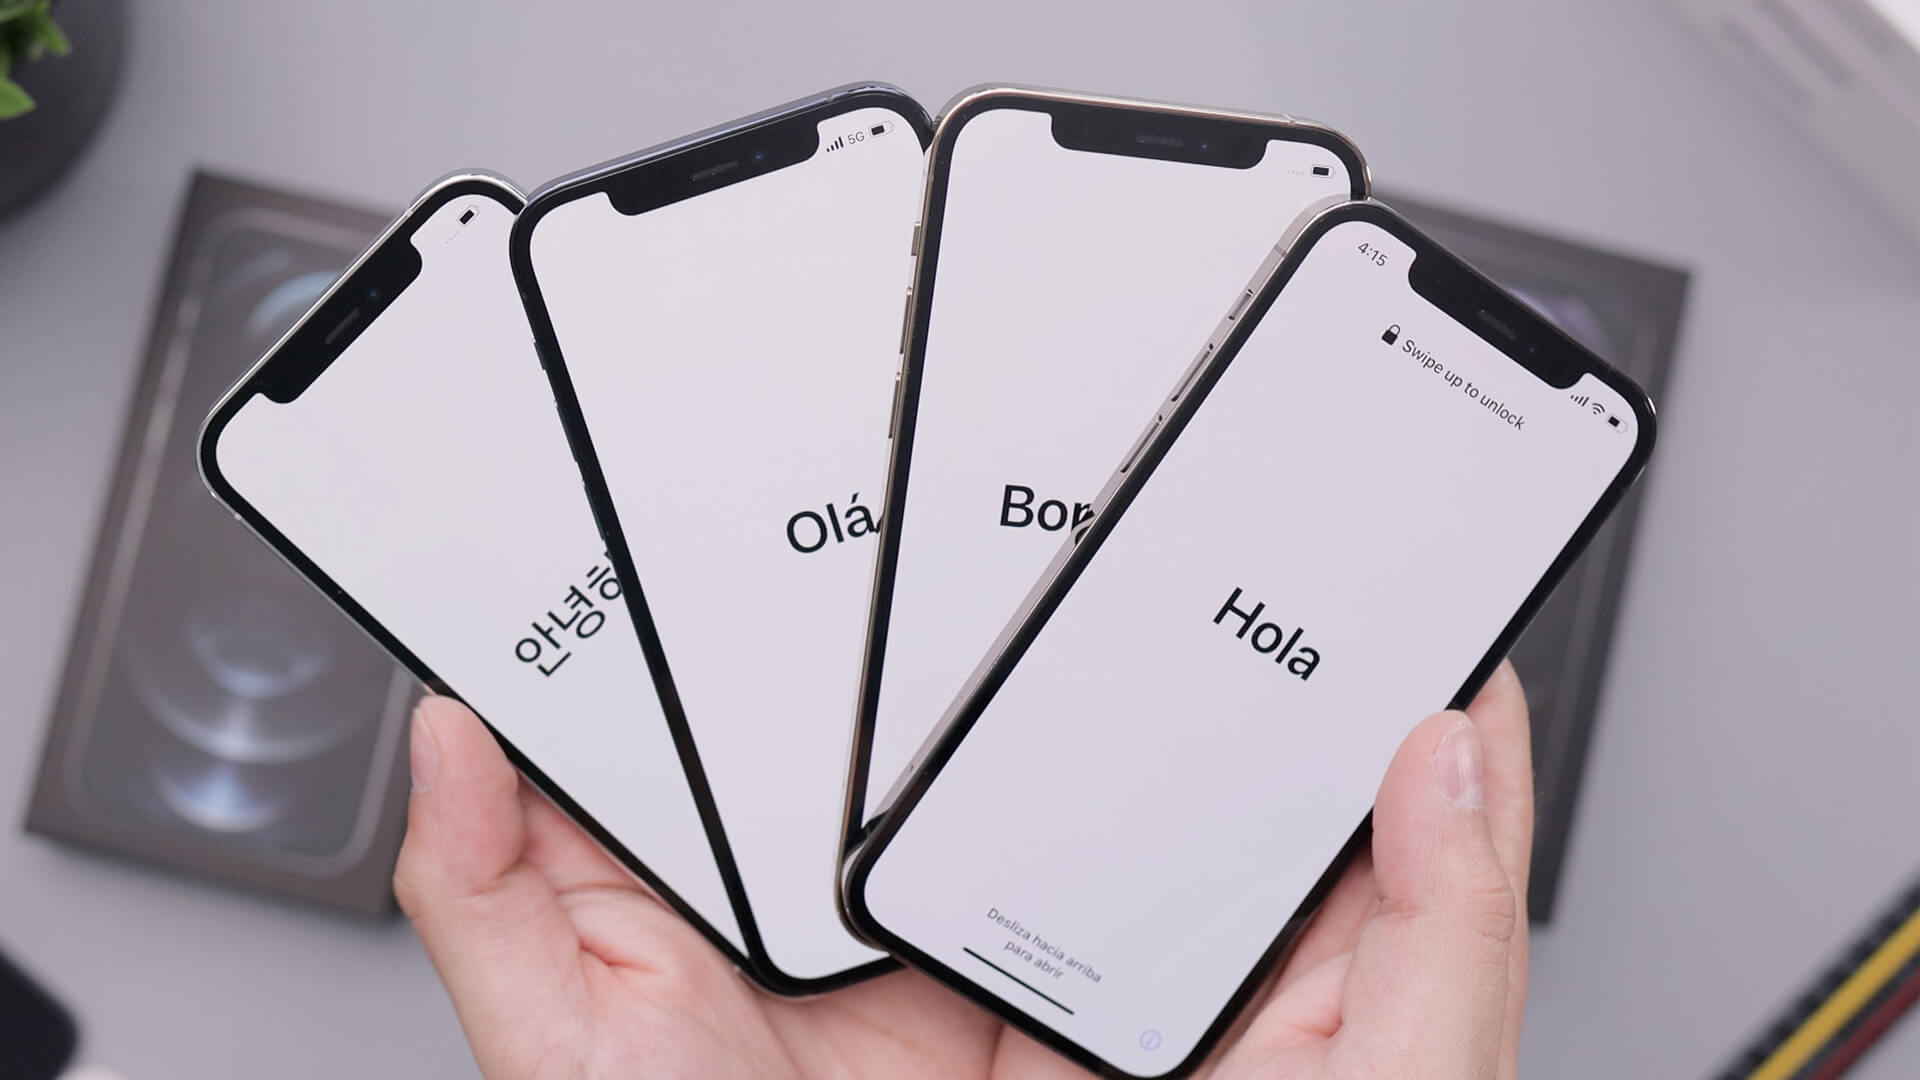 quatro smartphones com a palavra olá